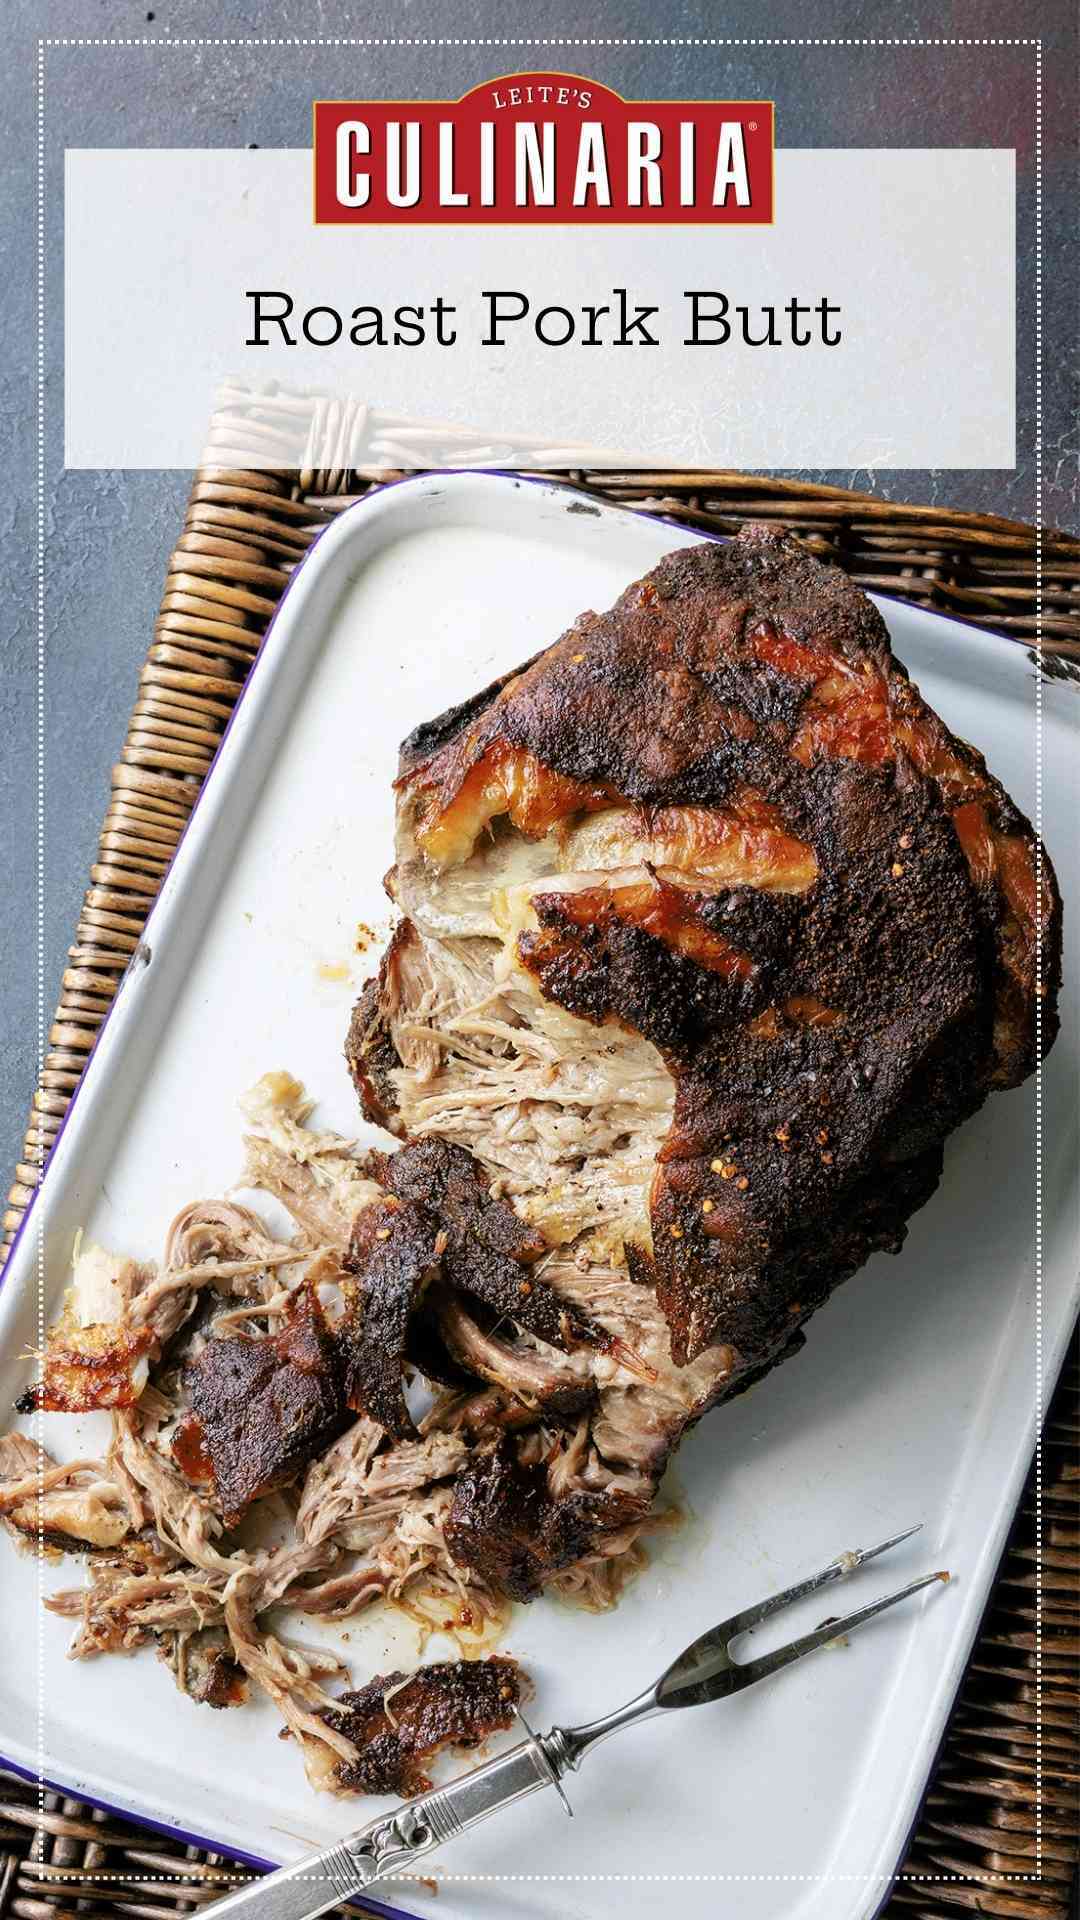 A partially shredded roast pork butt on a white tray.